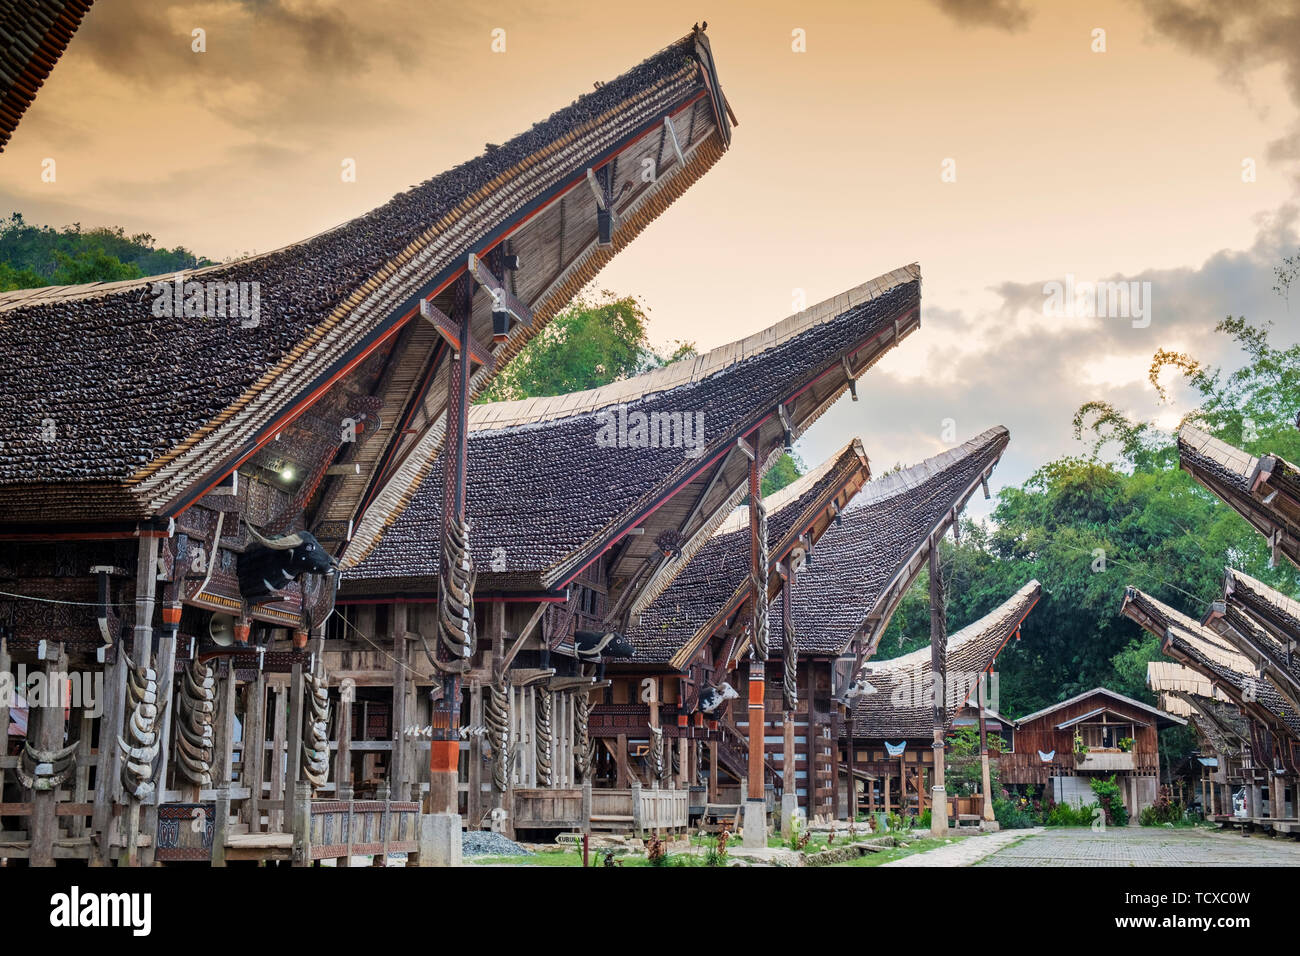 Un village agricole de riz avec des longues maisons Tongkonan Torajan, Tana Toraja, Sulawesi, Indonésie, Asie du Sud, Asie Banque D'Images